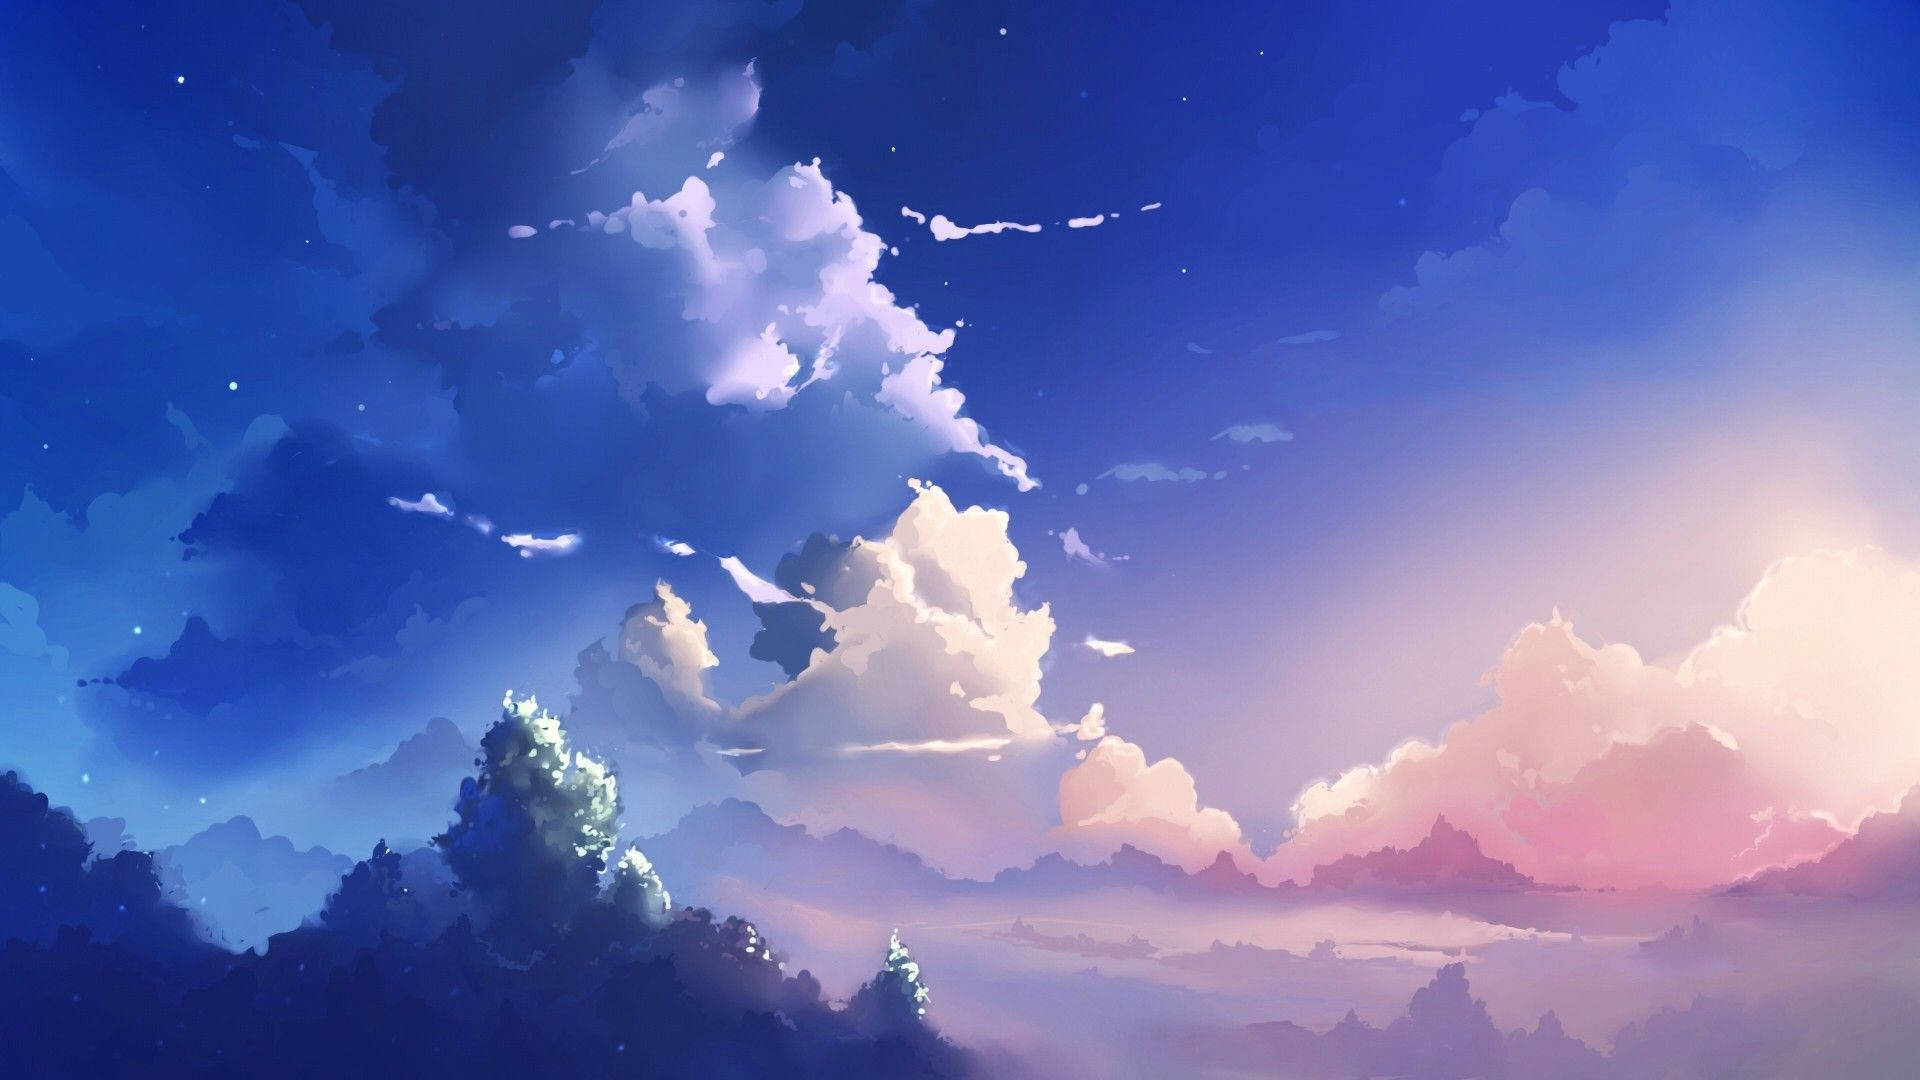 Anime Aesthetic Blue Skies Wallpaper